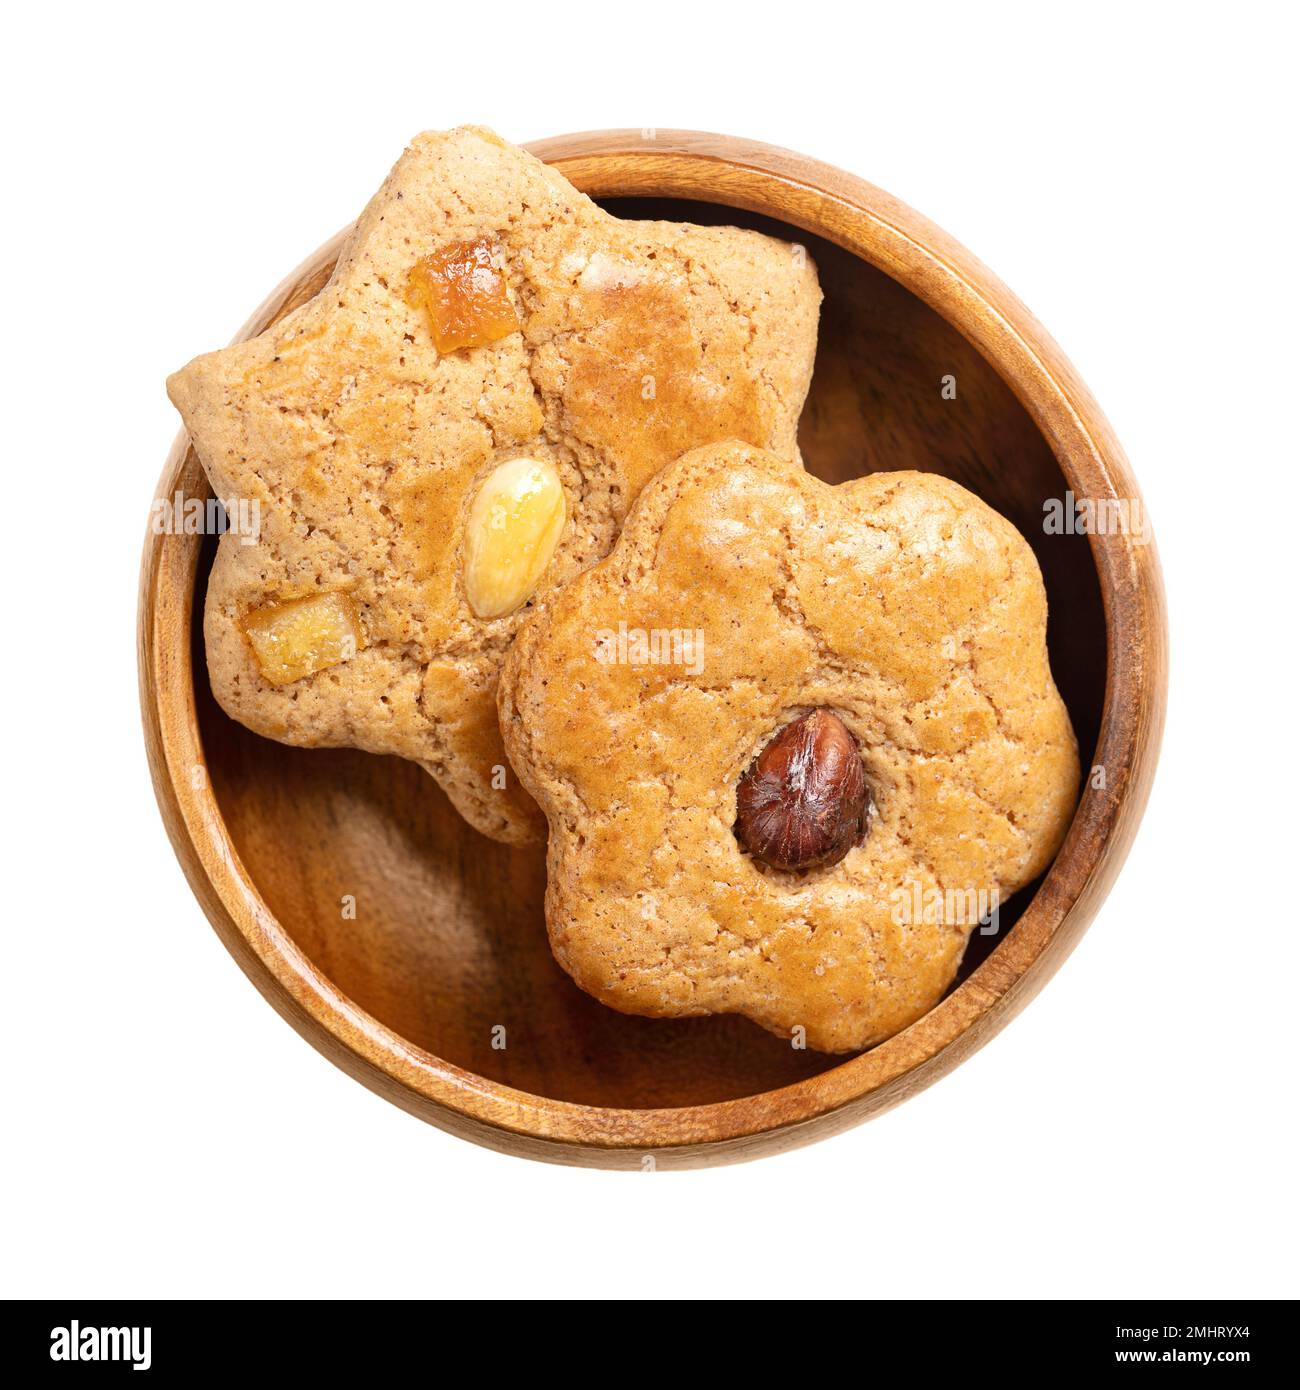 Biscuits maison au pain d'épice, dans un bol en bois. Produits de boulangerie doux, bruns, plats et en forme d'étoile, avec fruits confits et demi-noix sur le dessus. Banque D'Images